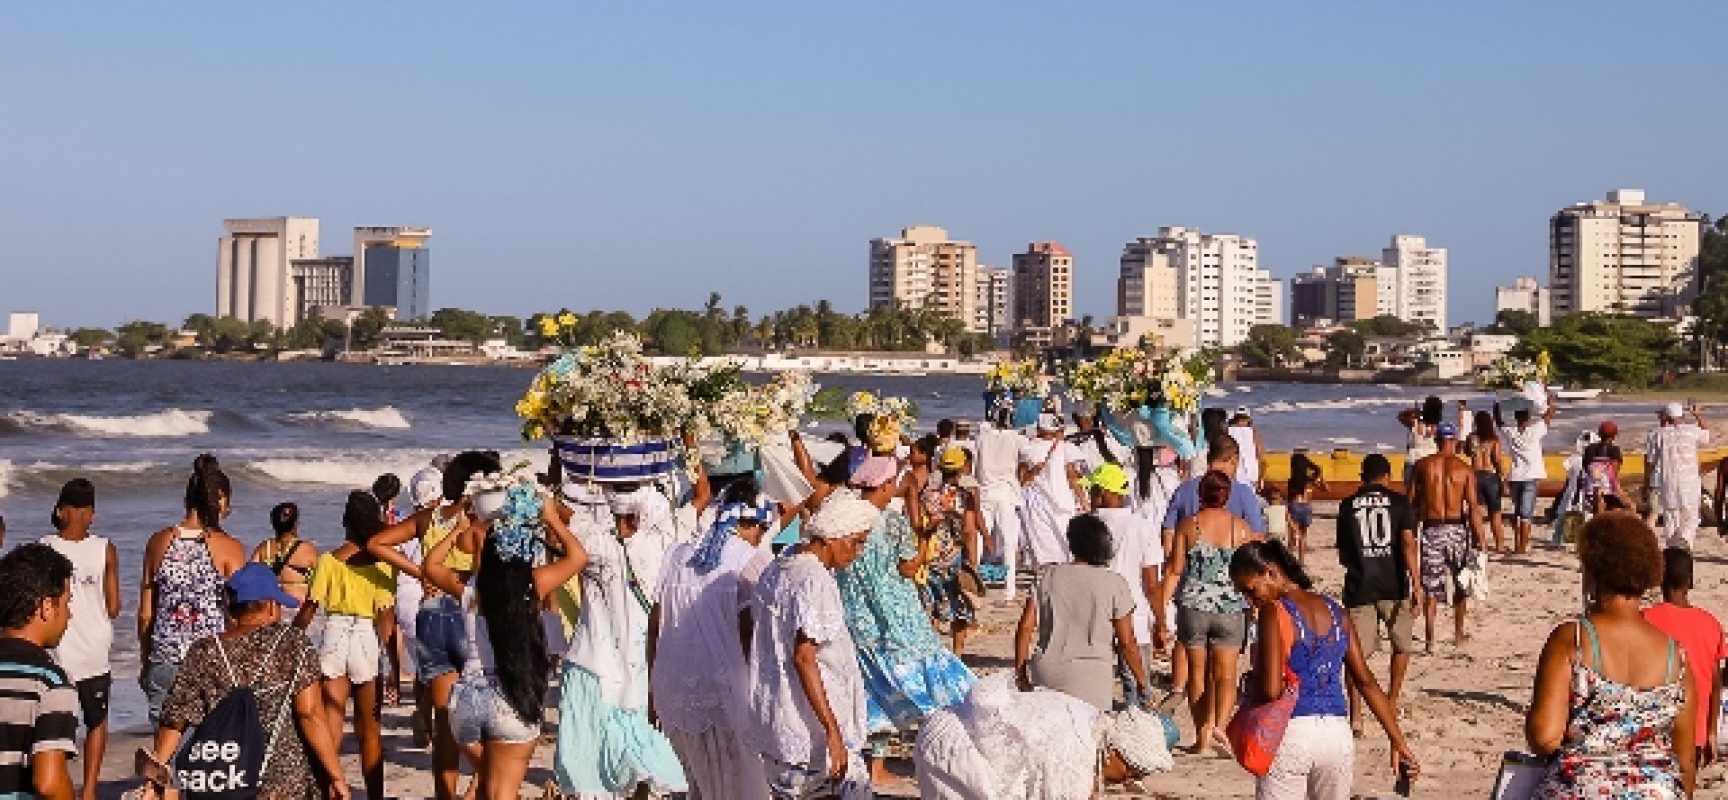 Com flores e mar: Festa de Iemanjá movimenta Ilhéus neste domingo (2)